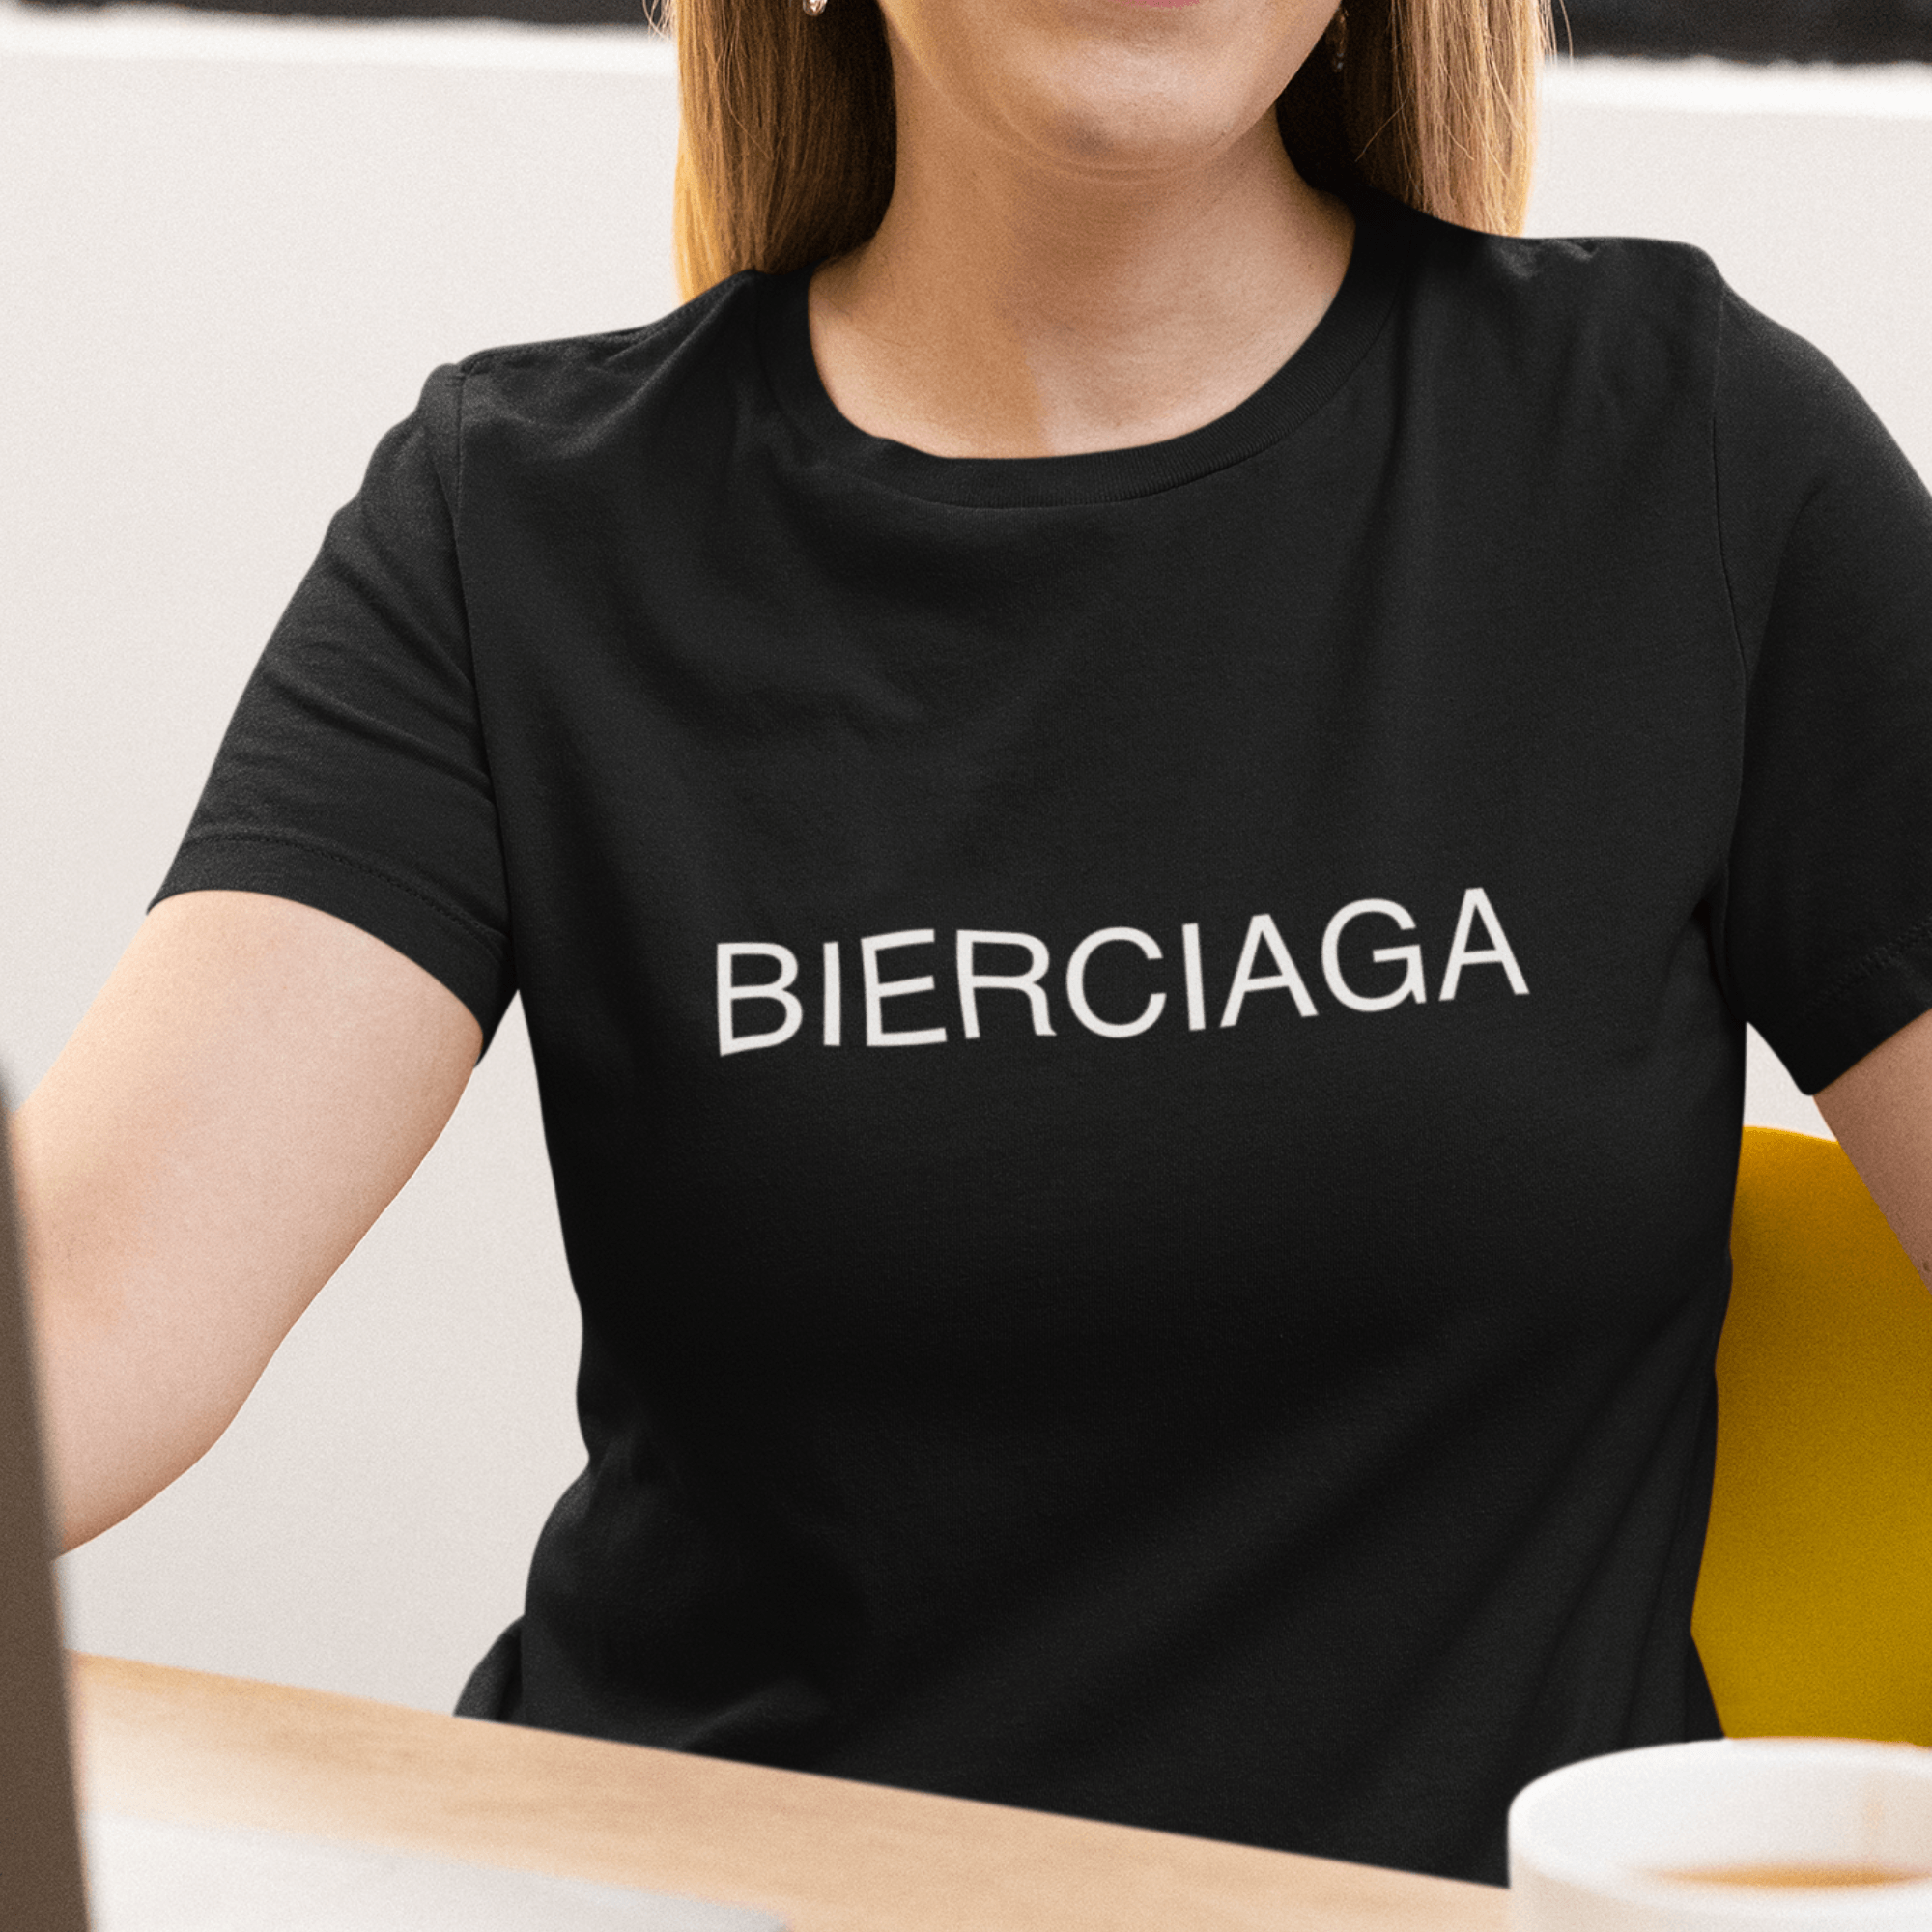 BIERCIAGA  - Damen Premiumshirt